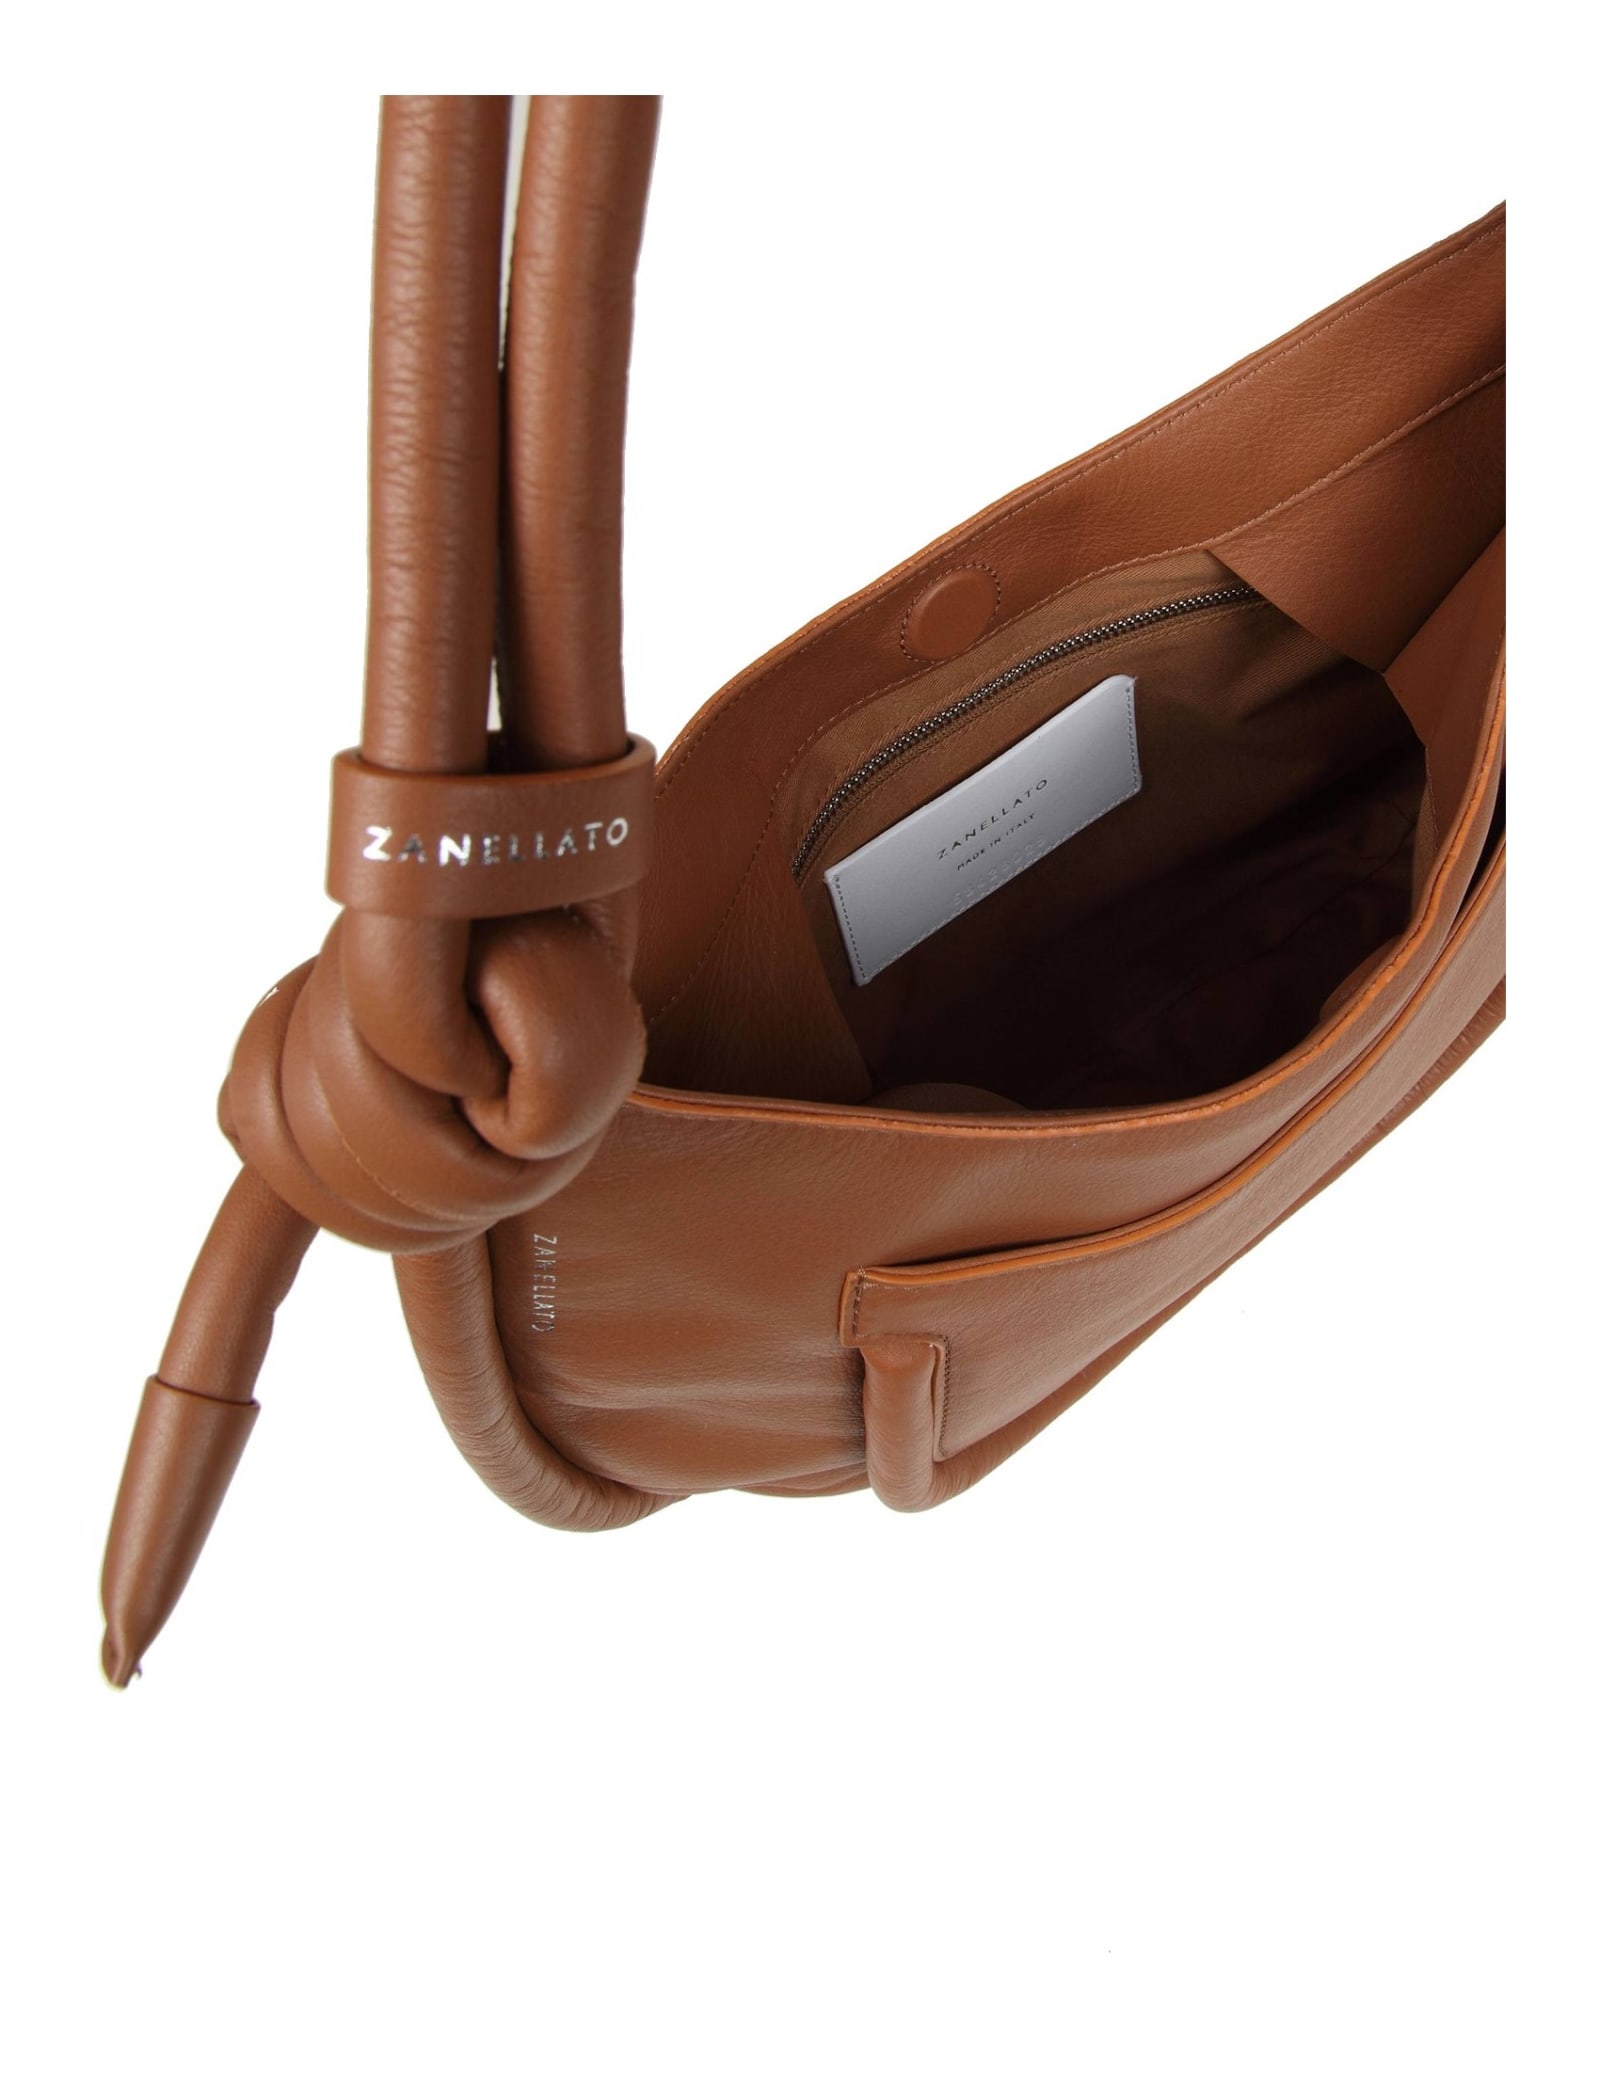 Shop Zanellato Demi Piuma Knot S Bag In Leather Color In Beige